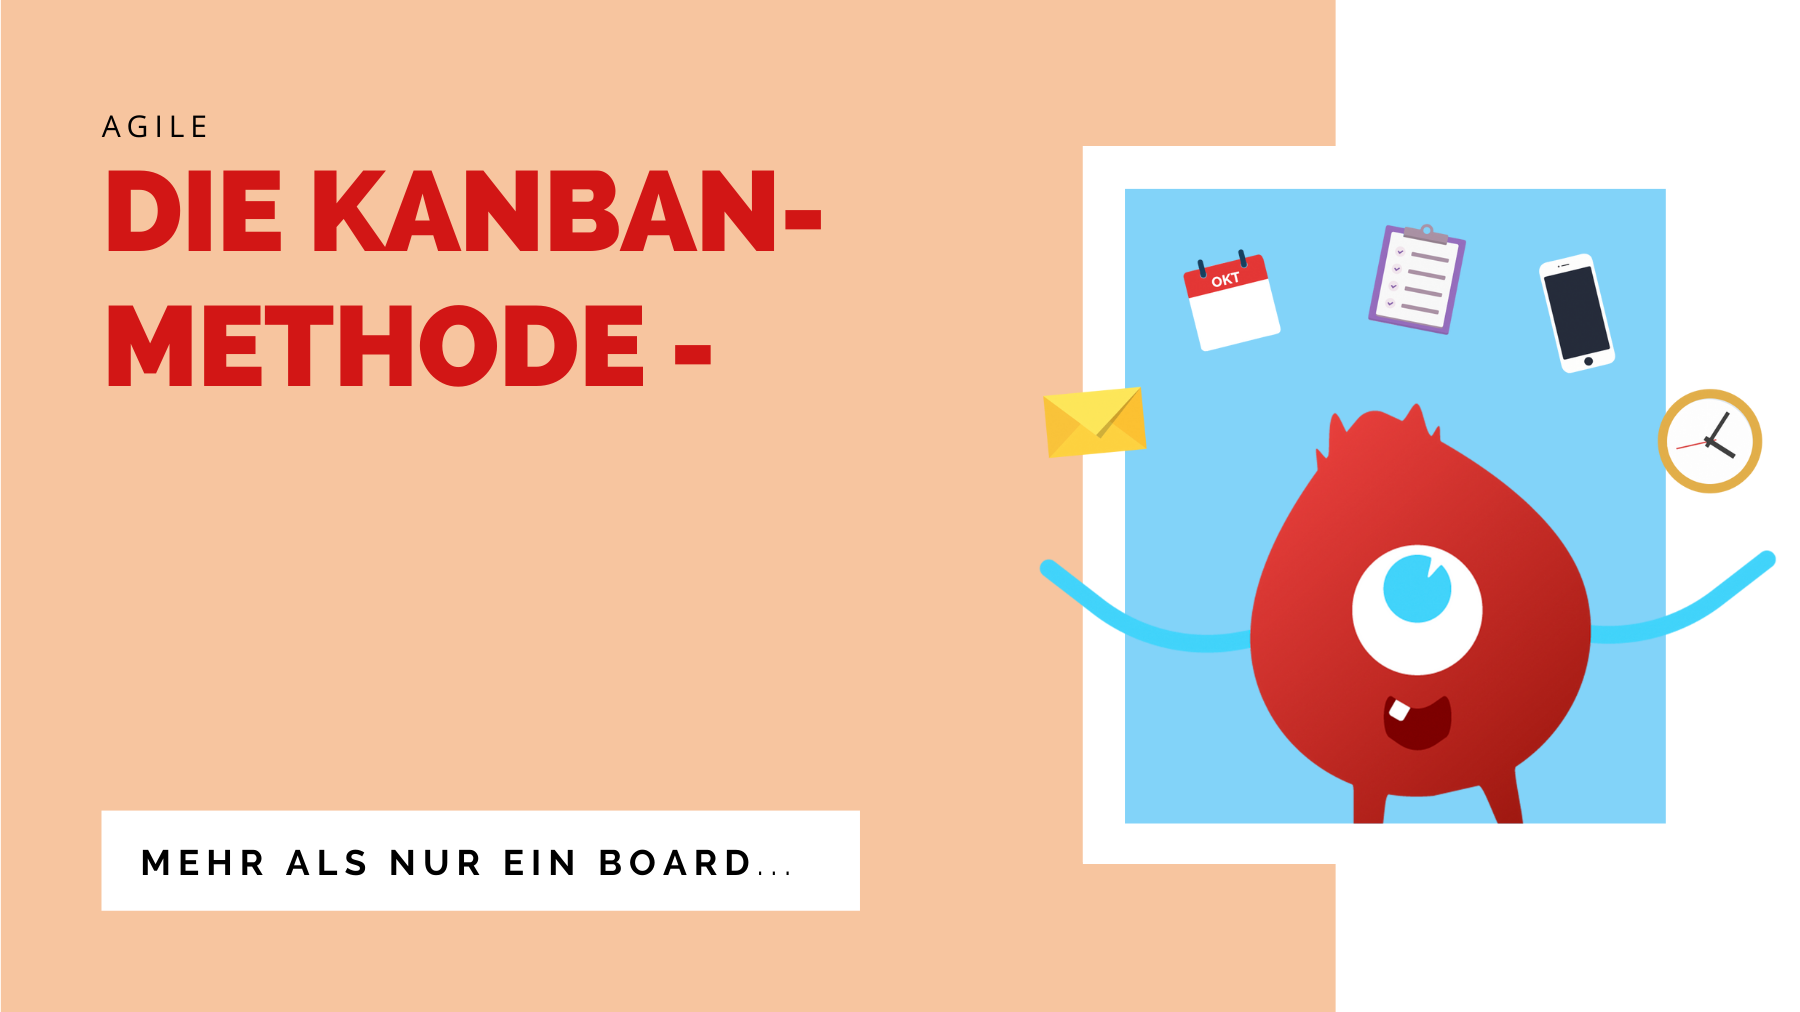 Die Kanban-Methode - mehr als nur ein Board